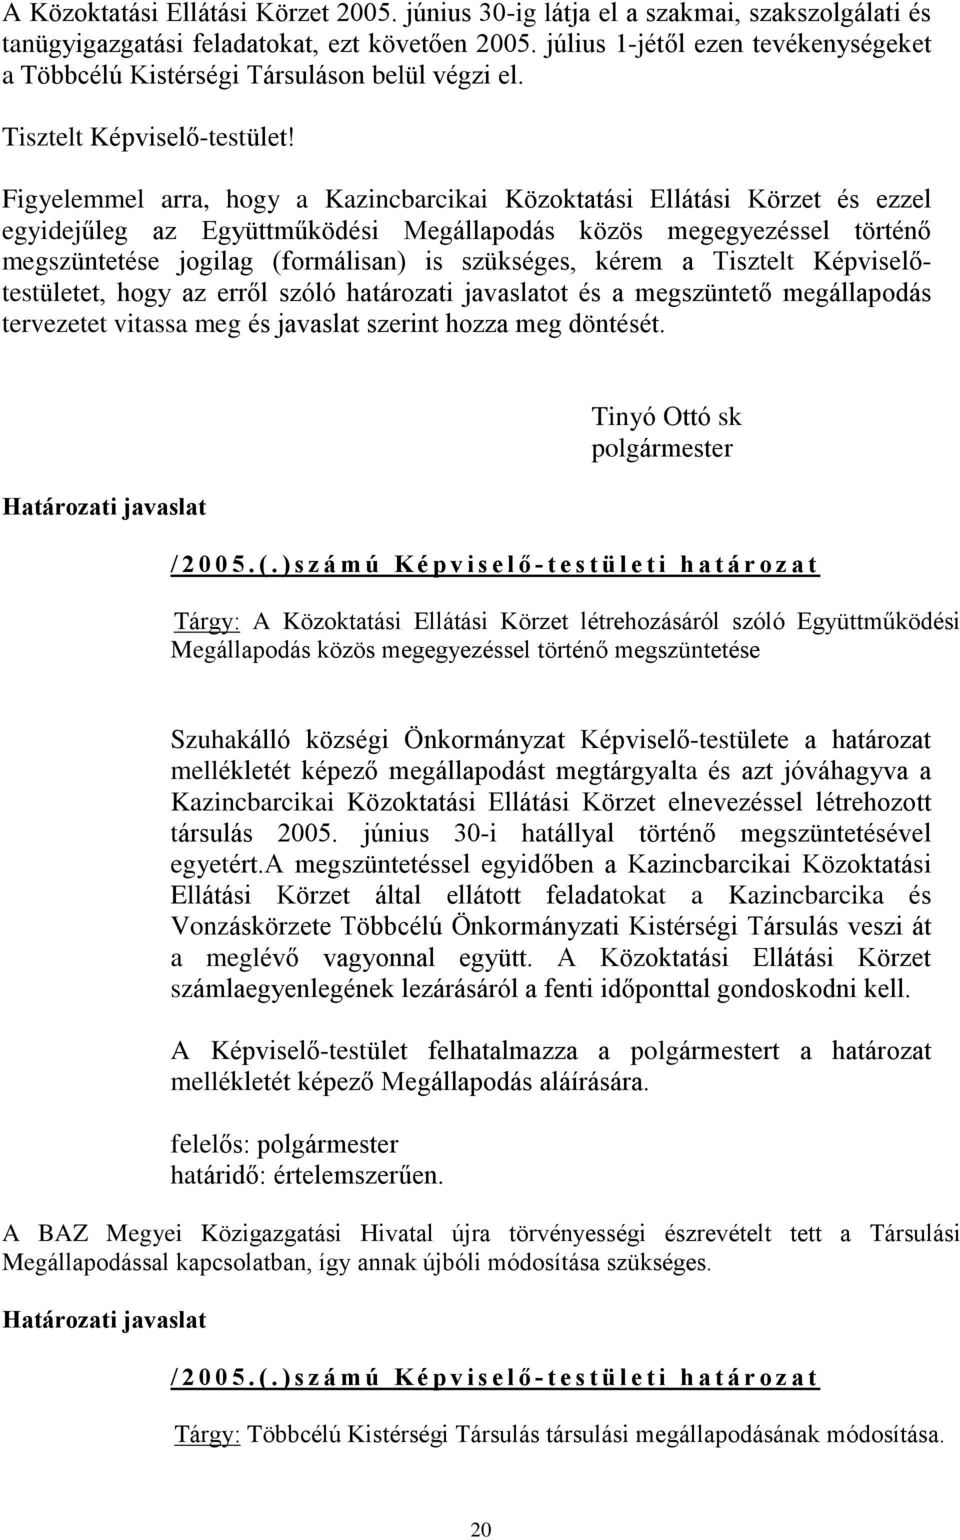 Figyelemmel arra, hogy a Kazincbarcikai Közoktatási Ellátási Körzet és ezzel egyidejûleg az Együttmûködési Megállapodás közös megegyezéssel történõ megszüntetése jogilag (formálisan) is szükséges,